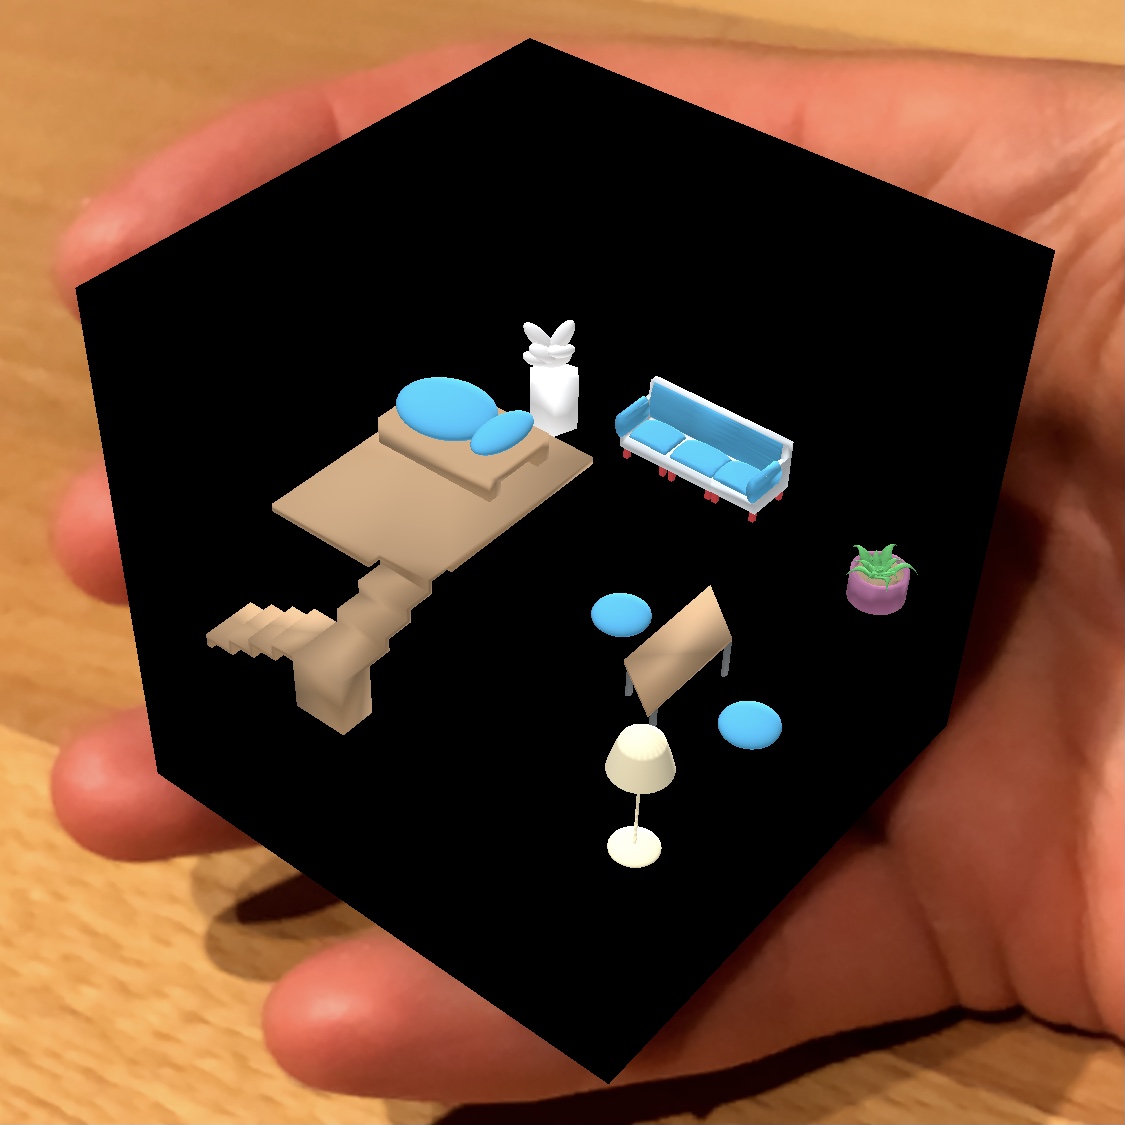 Darstellung eines 3D-Modells in Augmented Reality auf einer Hand. 3D-Modell zeigt Hausinventar